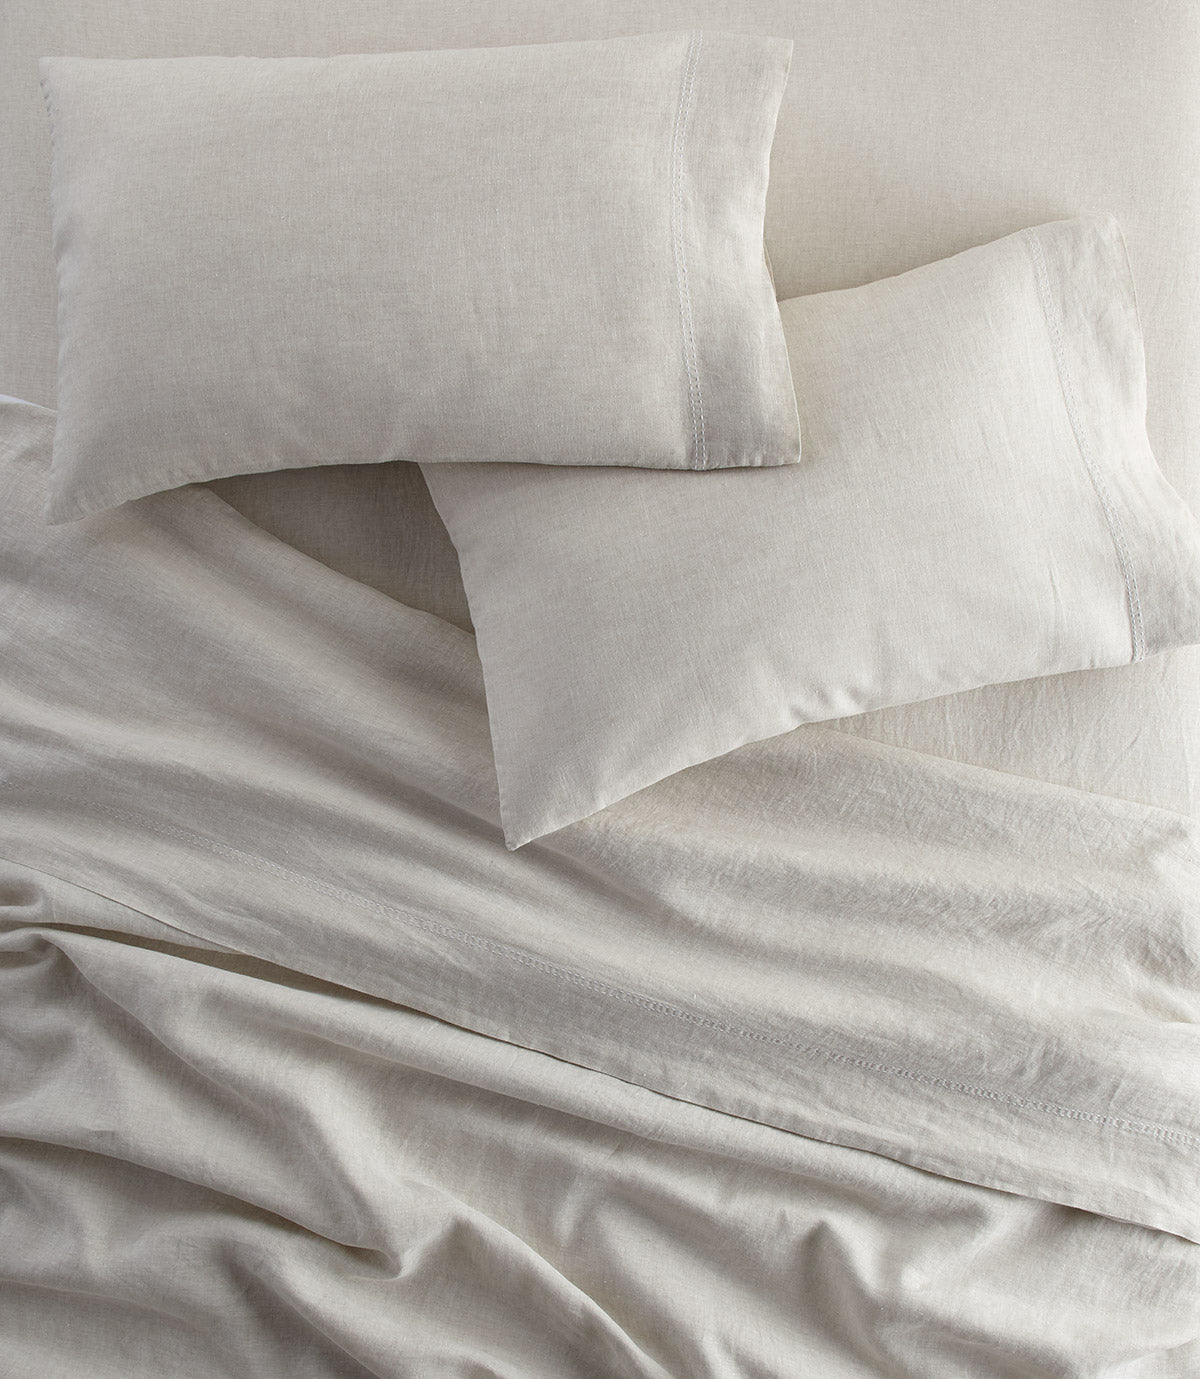 European Washed Linen Sheet Set on bed, Natural